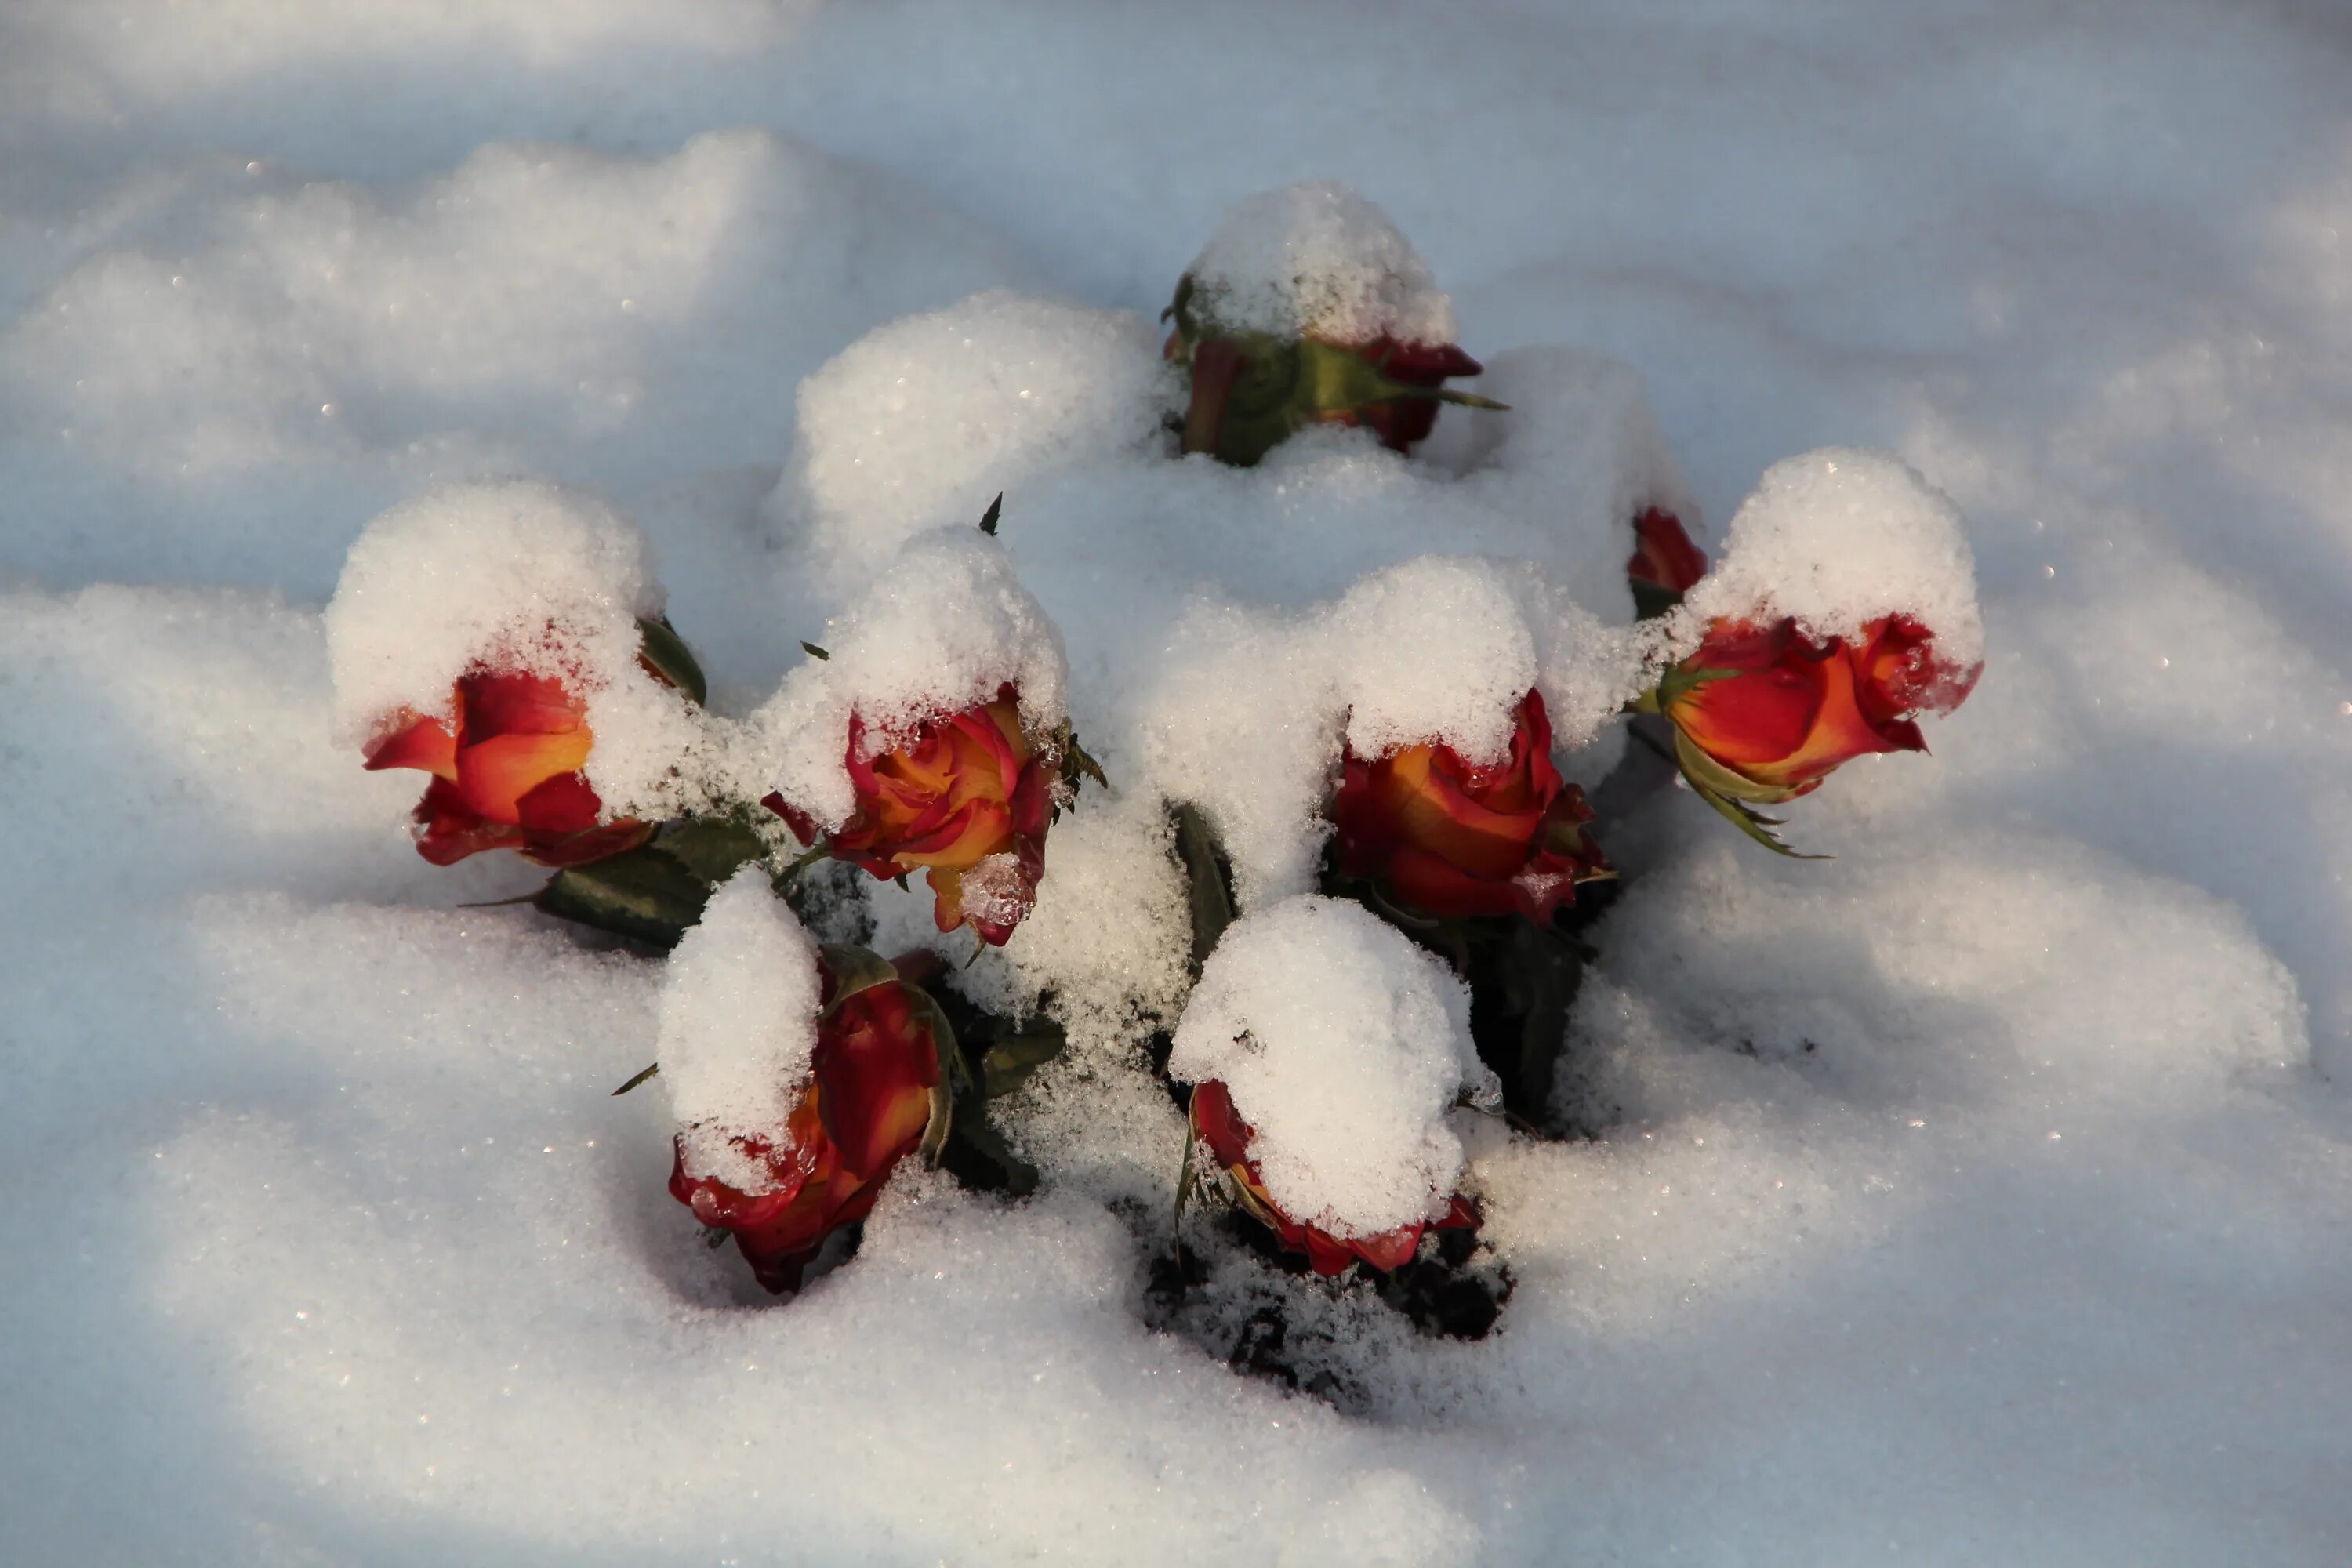 Цветы зимой. Валяние в снегу. Пионы под снегом. Цветы на могилу зимой.